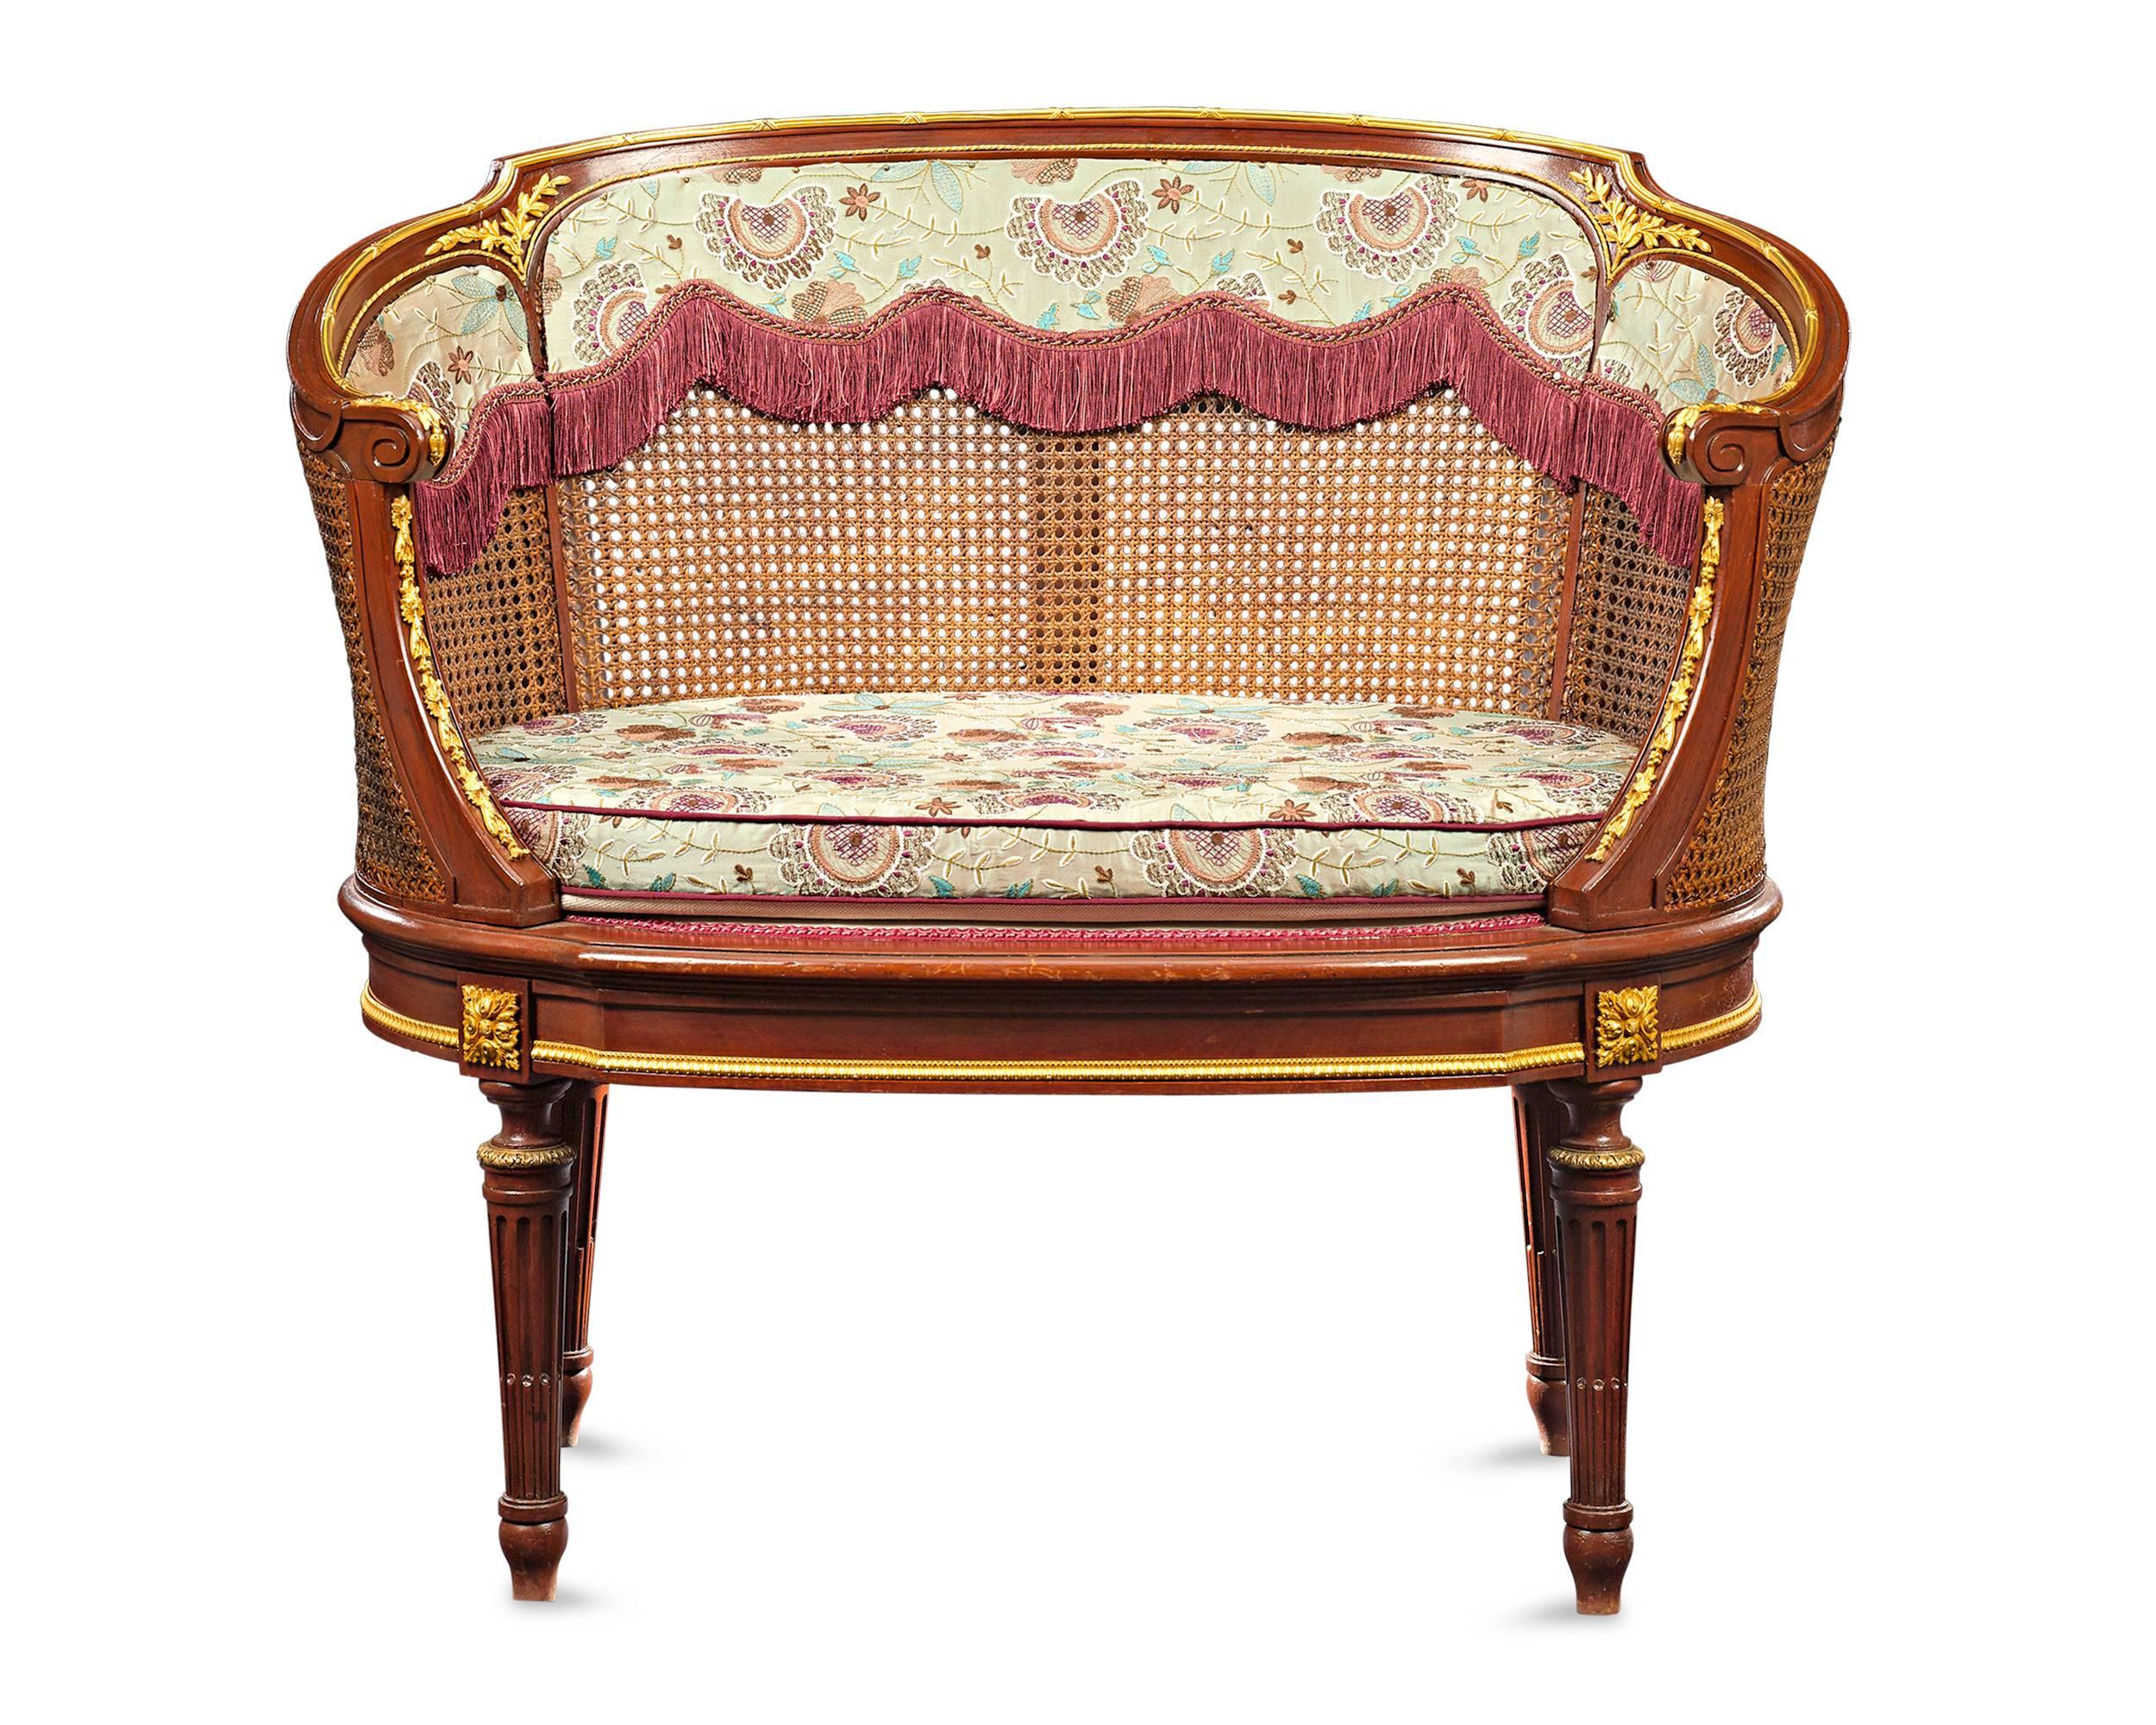 Dieses exquisite Paar französischer Polsterbänke aus dem 19. Jahrhundert fängt den Geist des Louis XV-Stils ein. Die vielseitig einsetzbaren Stühle sind mit anmutig geschwungenen, doppelten Rückenlehnen ausgestattet und Goldbronze-Akzente verleihen